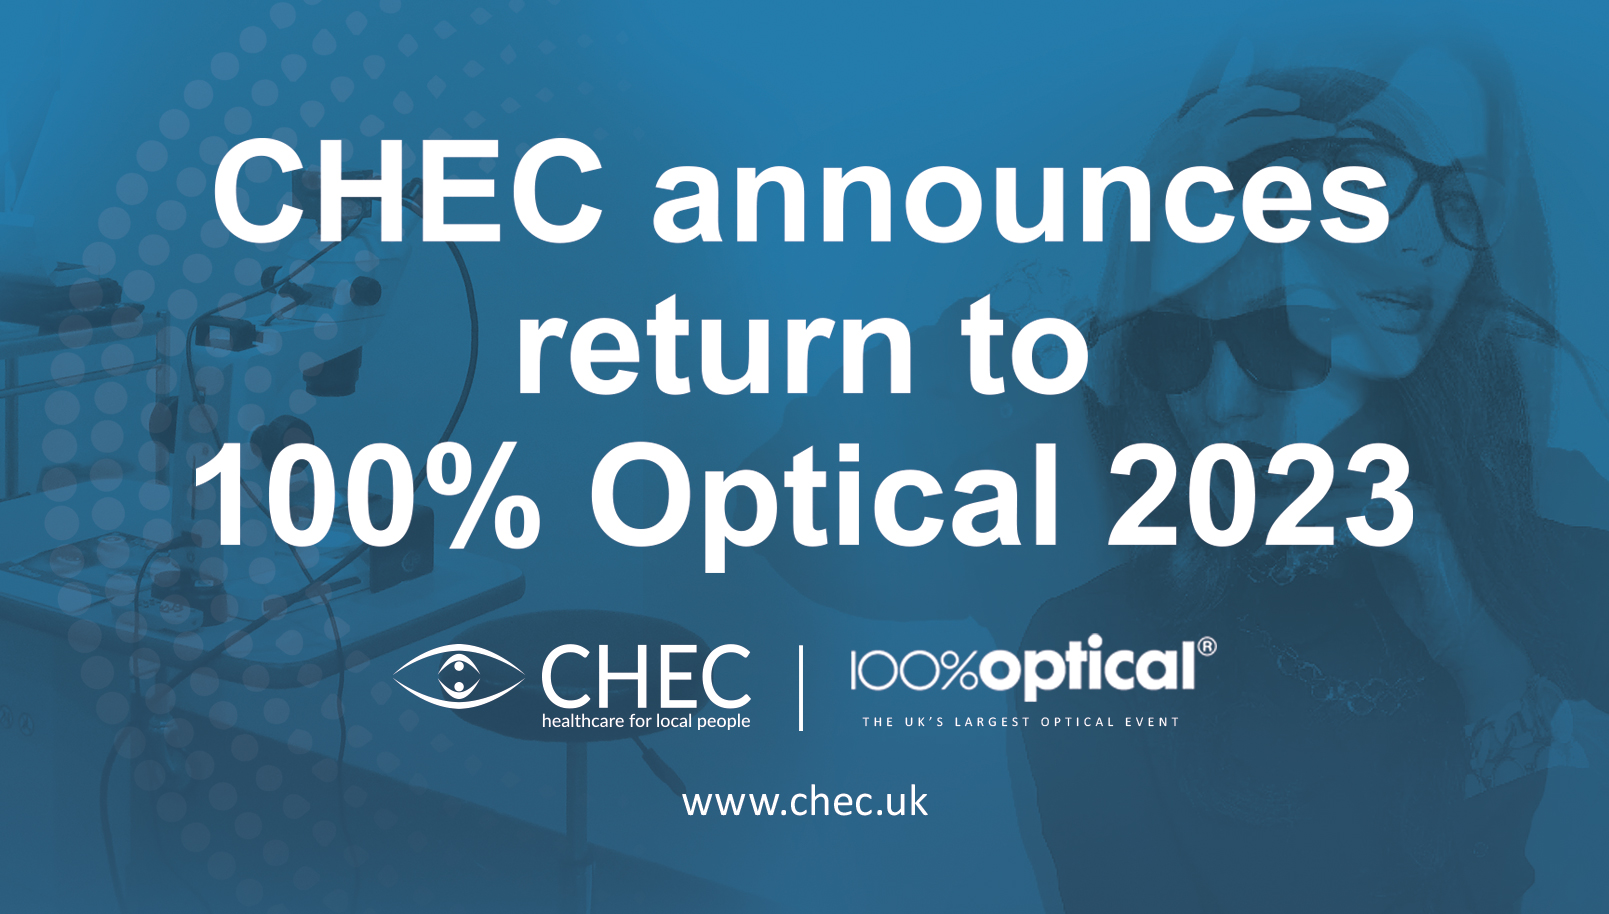 chec announces return to 100-optical 2023